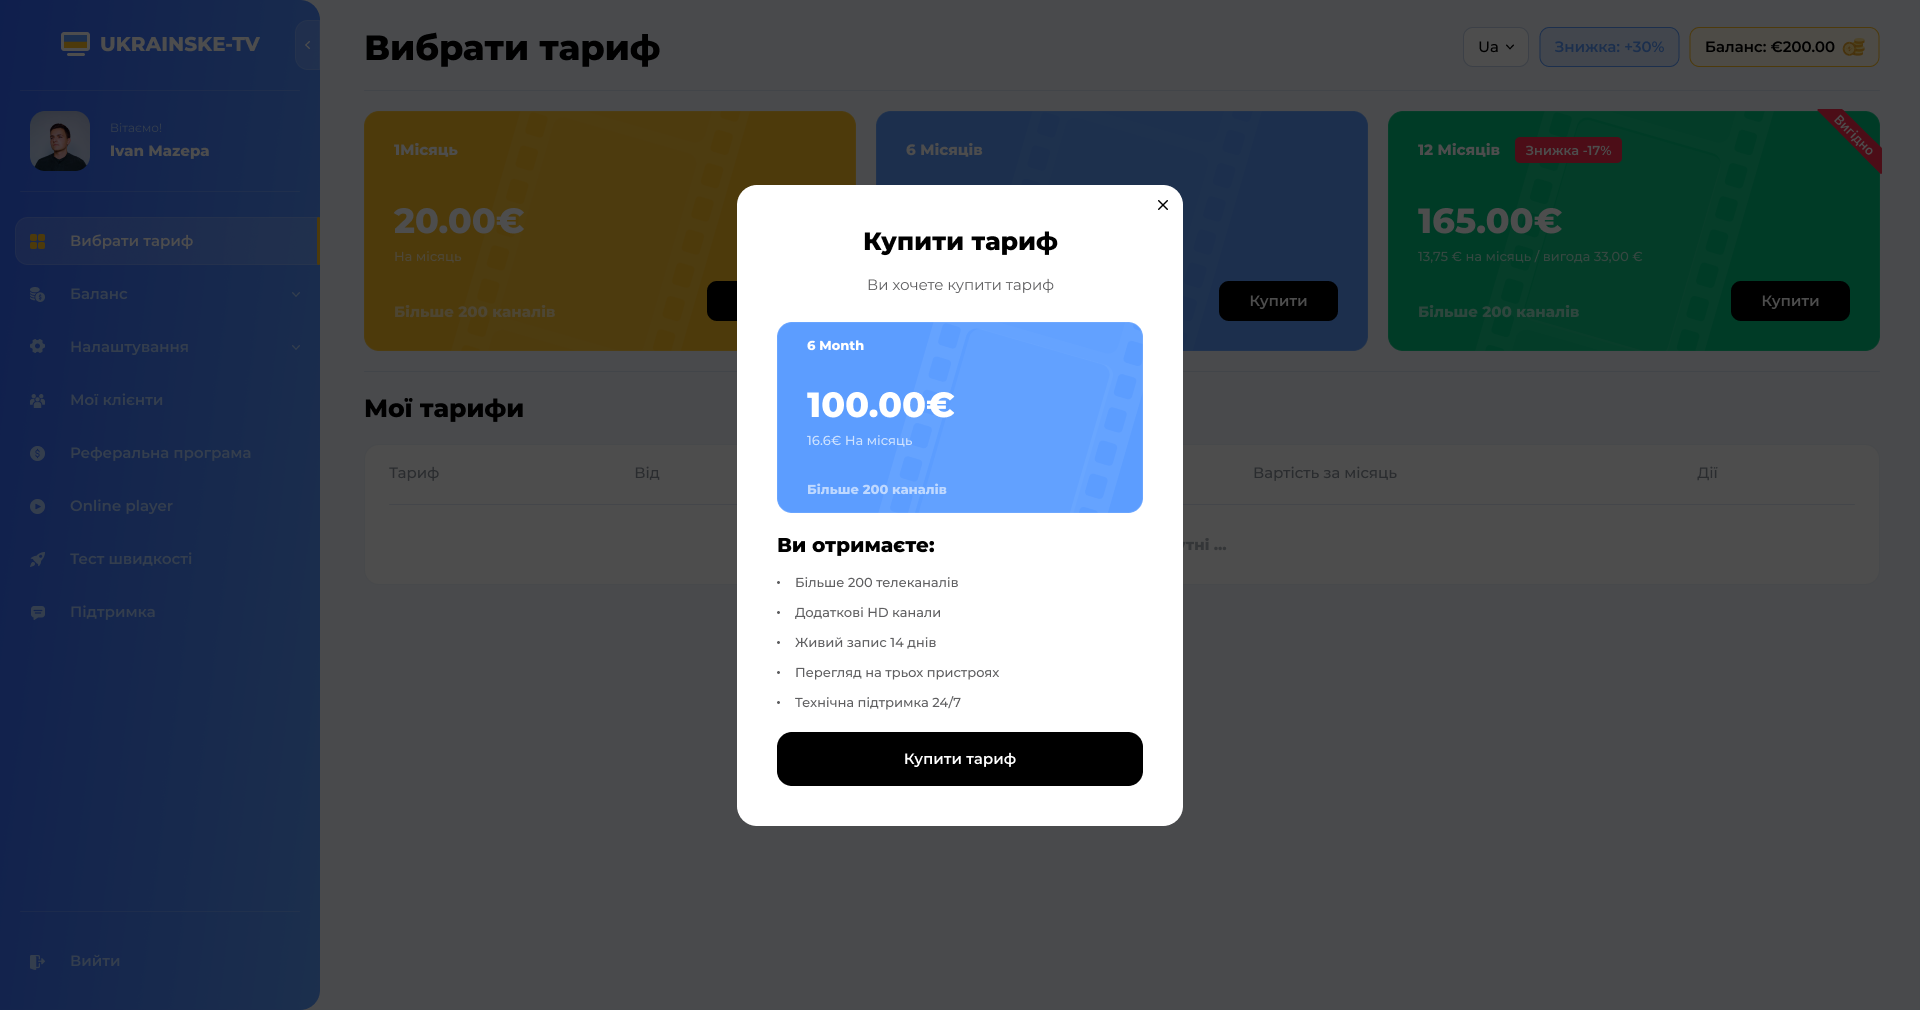 Ukrainske_01.1_Personal_Office_Tariff_1.0